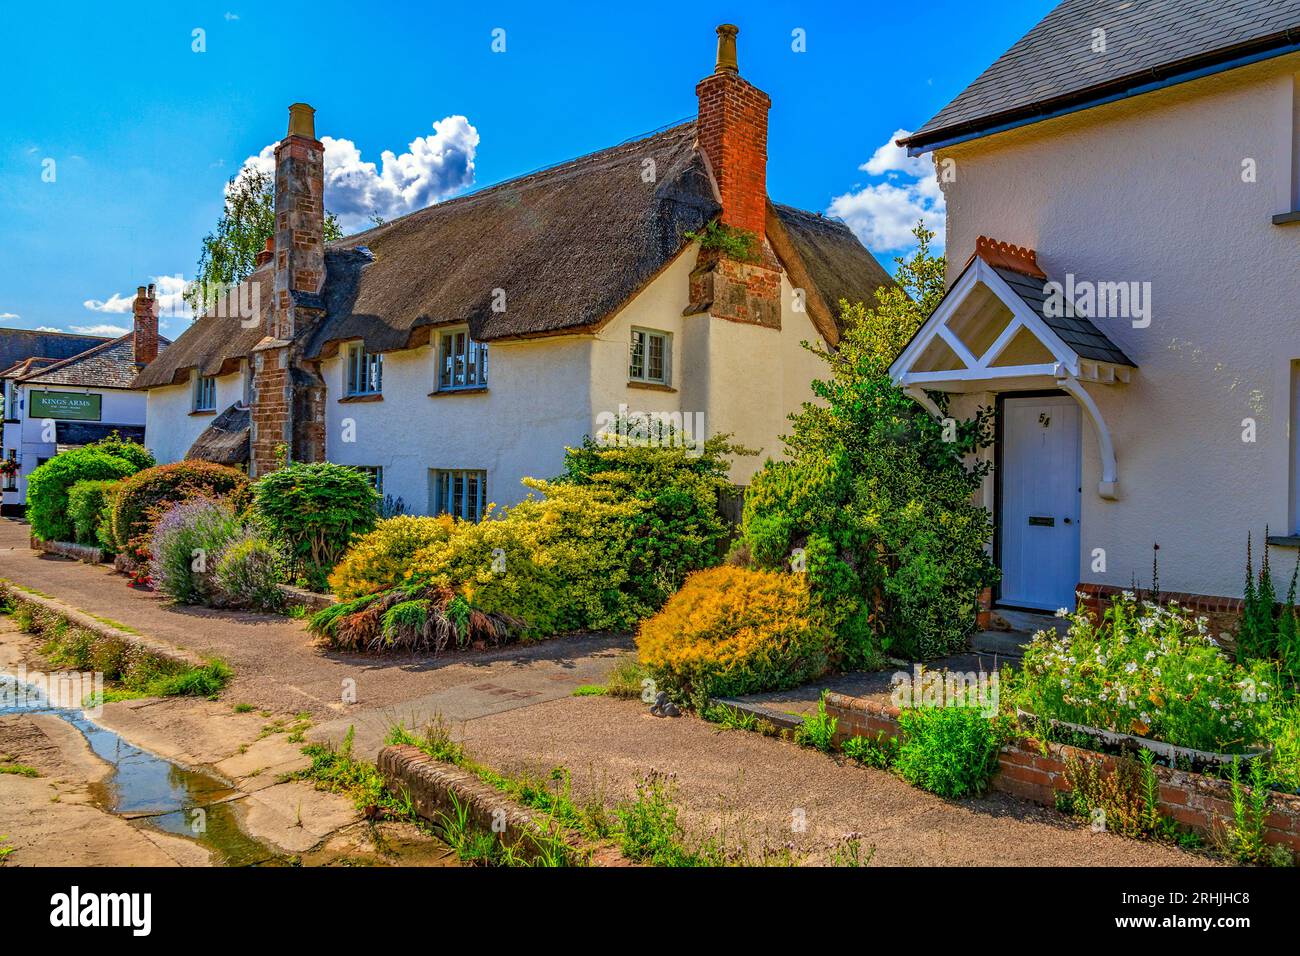 Farbenfrohe Cottages und gepflegte Gärten säumen die Hauptstraße in Otterton, Devon, England, Großbritannien Stockfoto